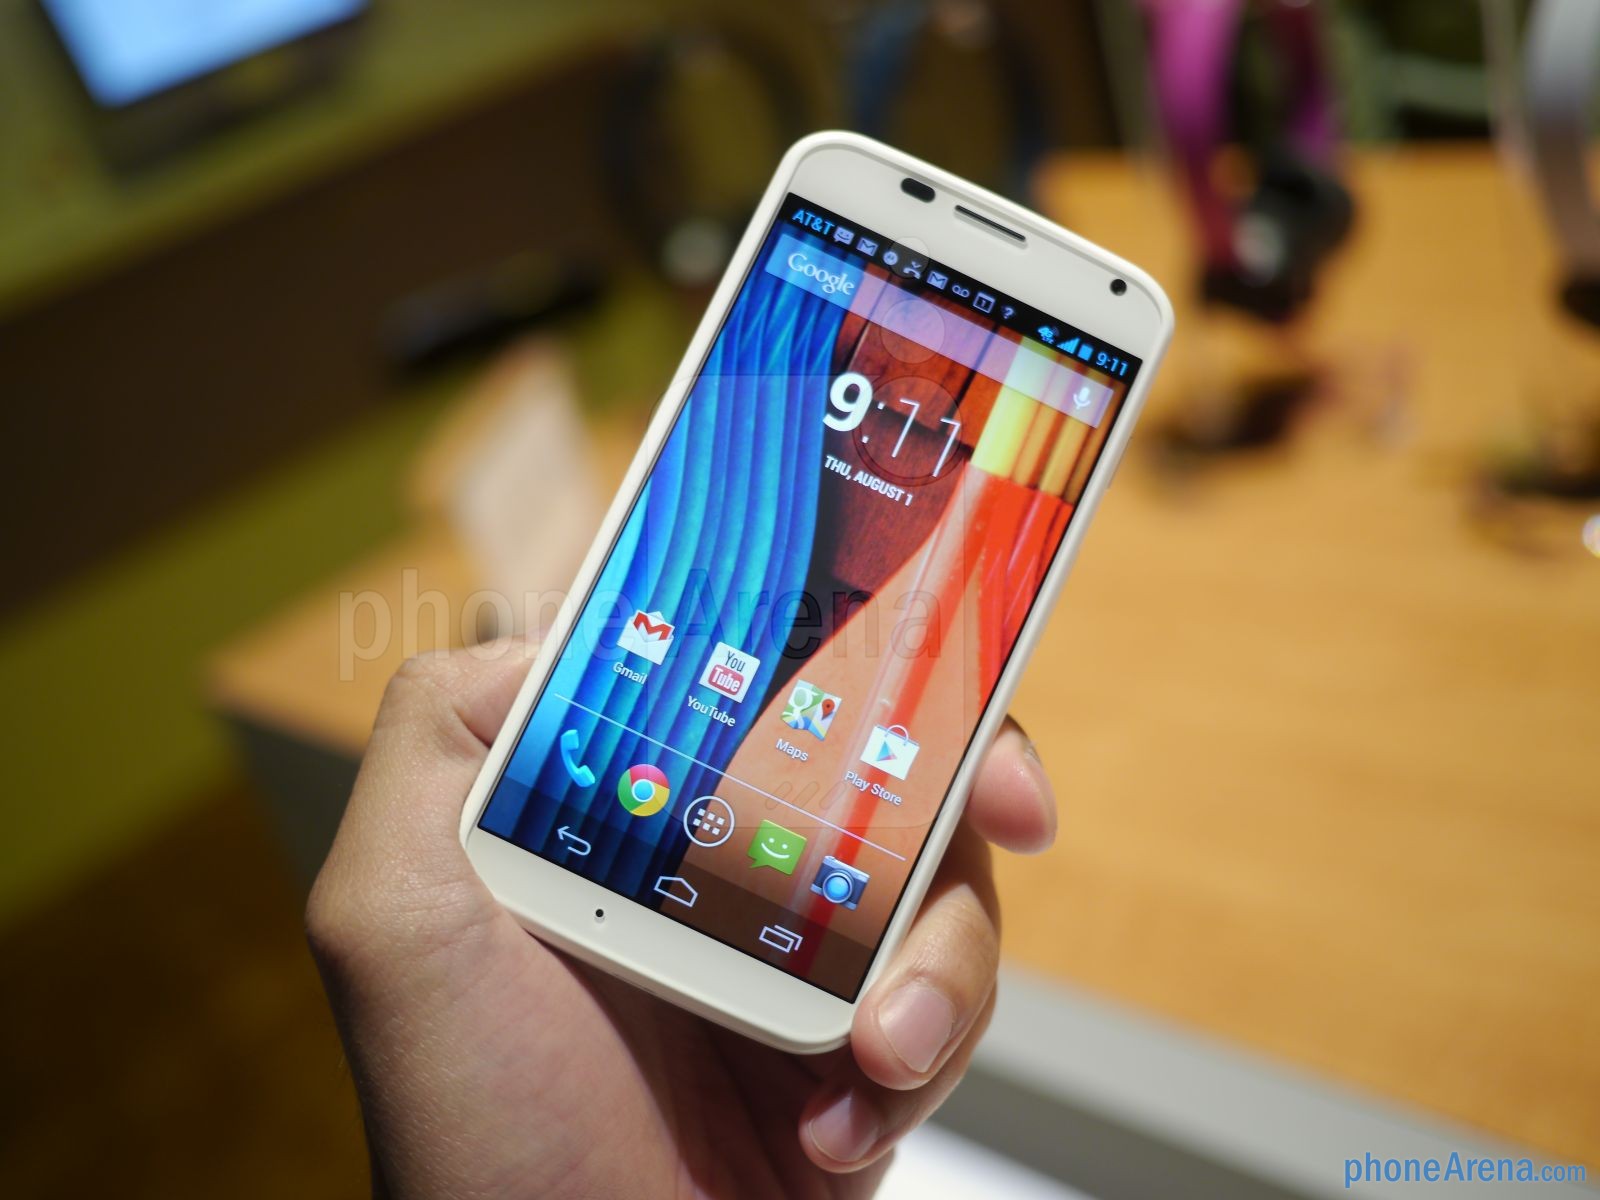 Motorola Moto X'in resmi tanıtım videoları da yayınlandı